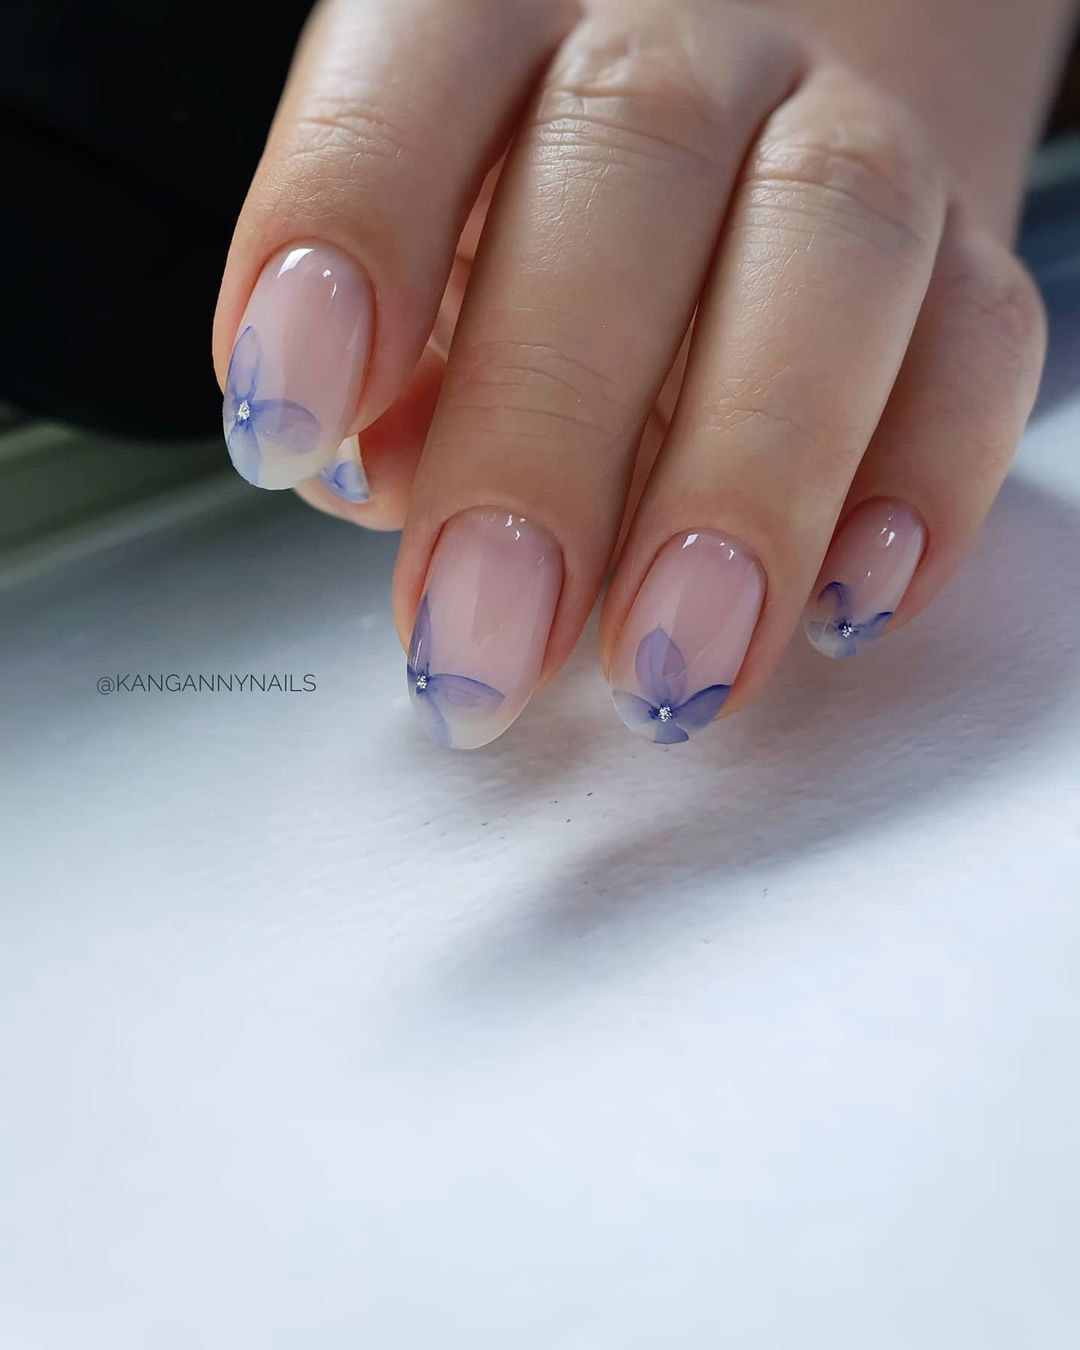 nude wedding nails with blue petals kangannynails